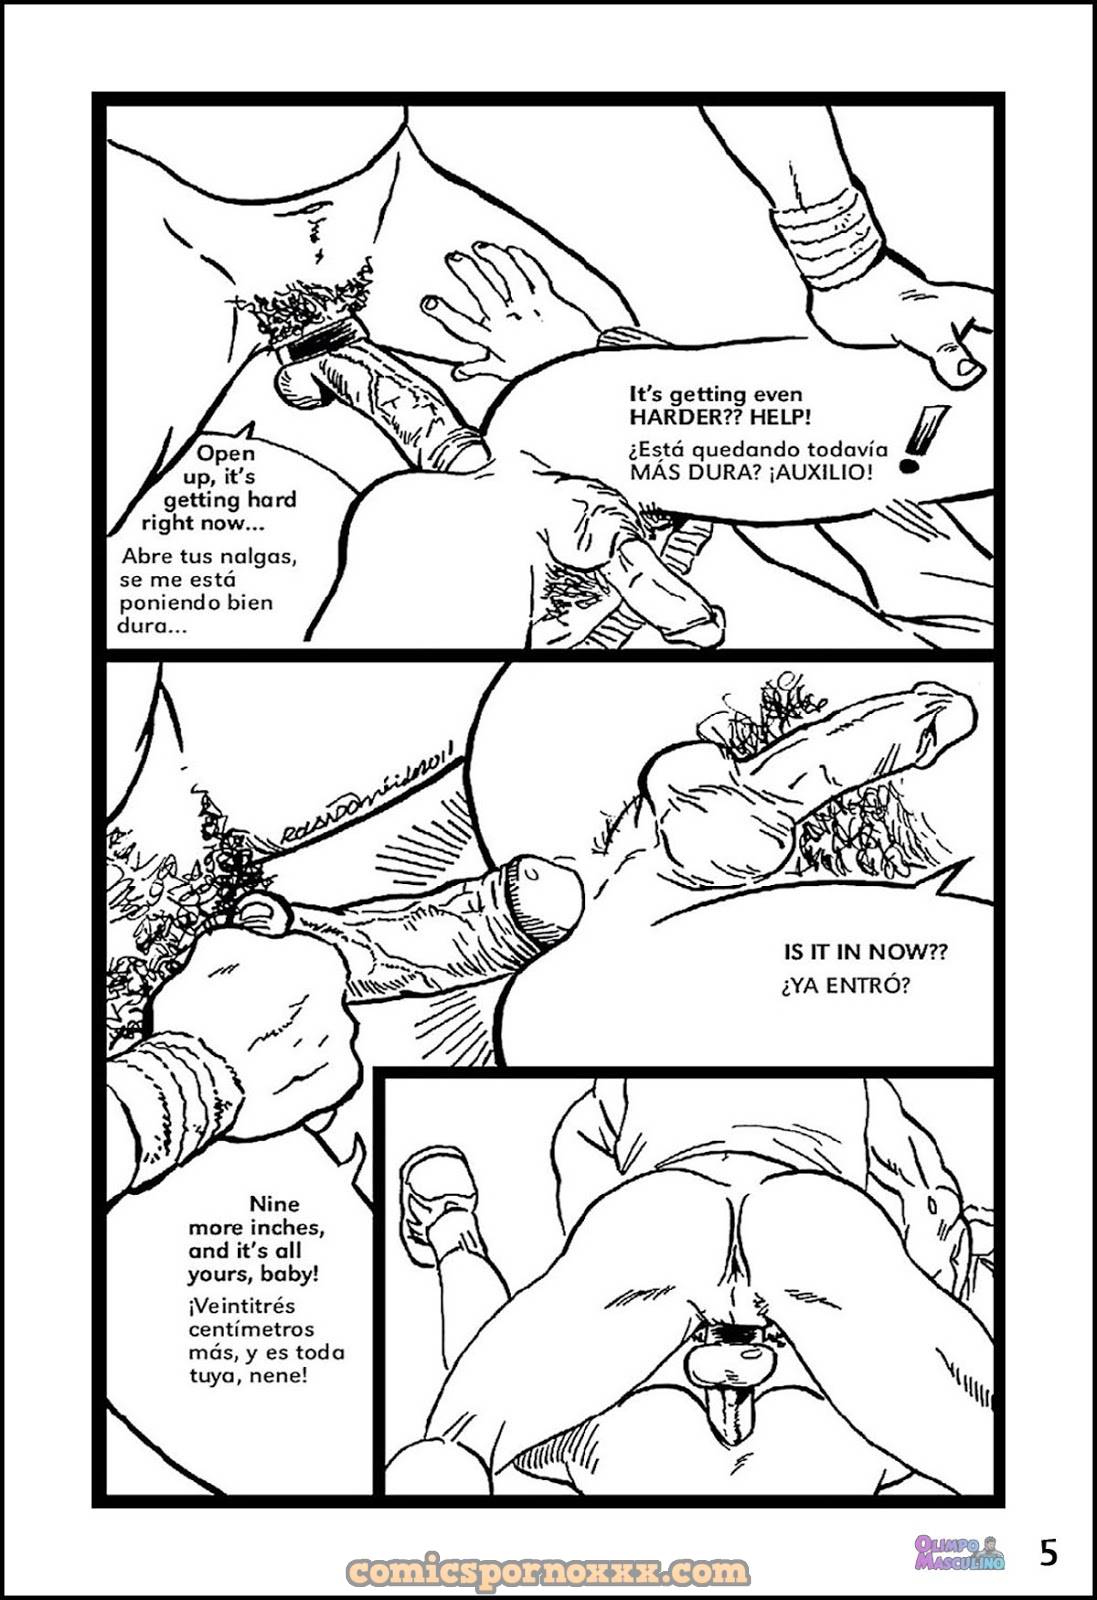 Sudor de Gimnasio - 5 - Comics Porno - Hentai Manga - Cartoon XXX